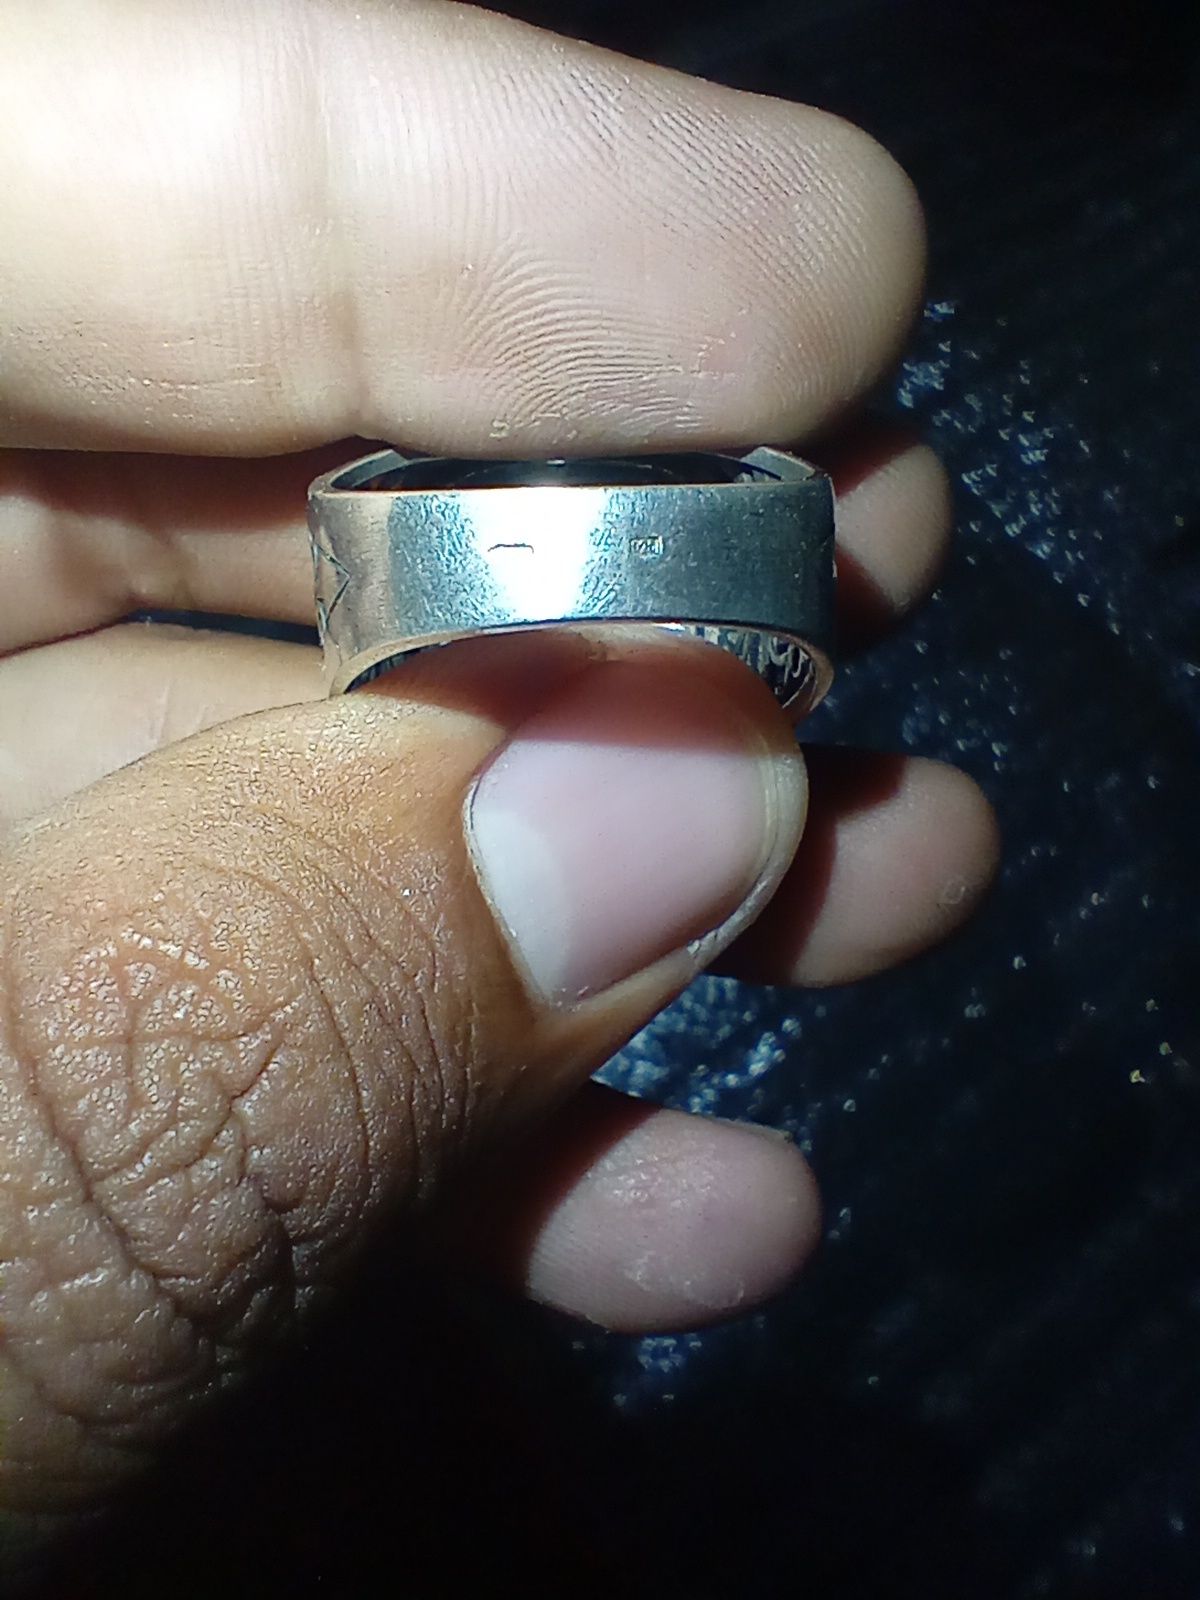 Мужской перстень серебро